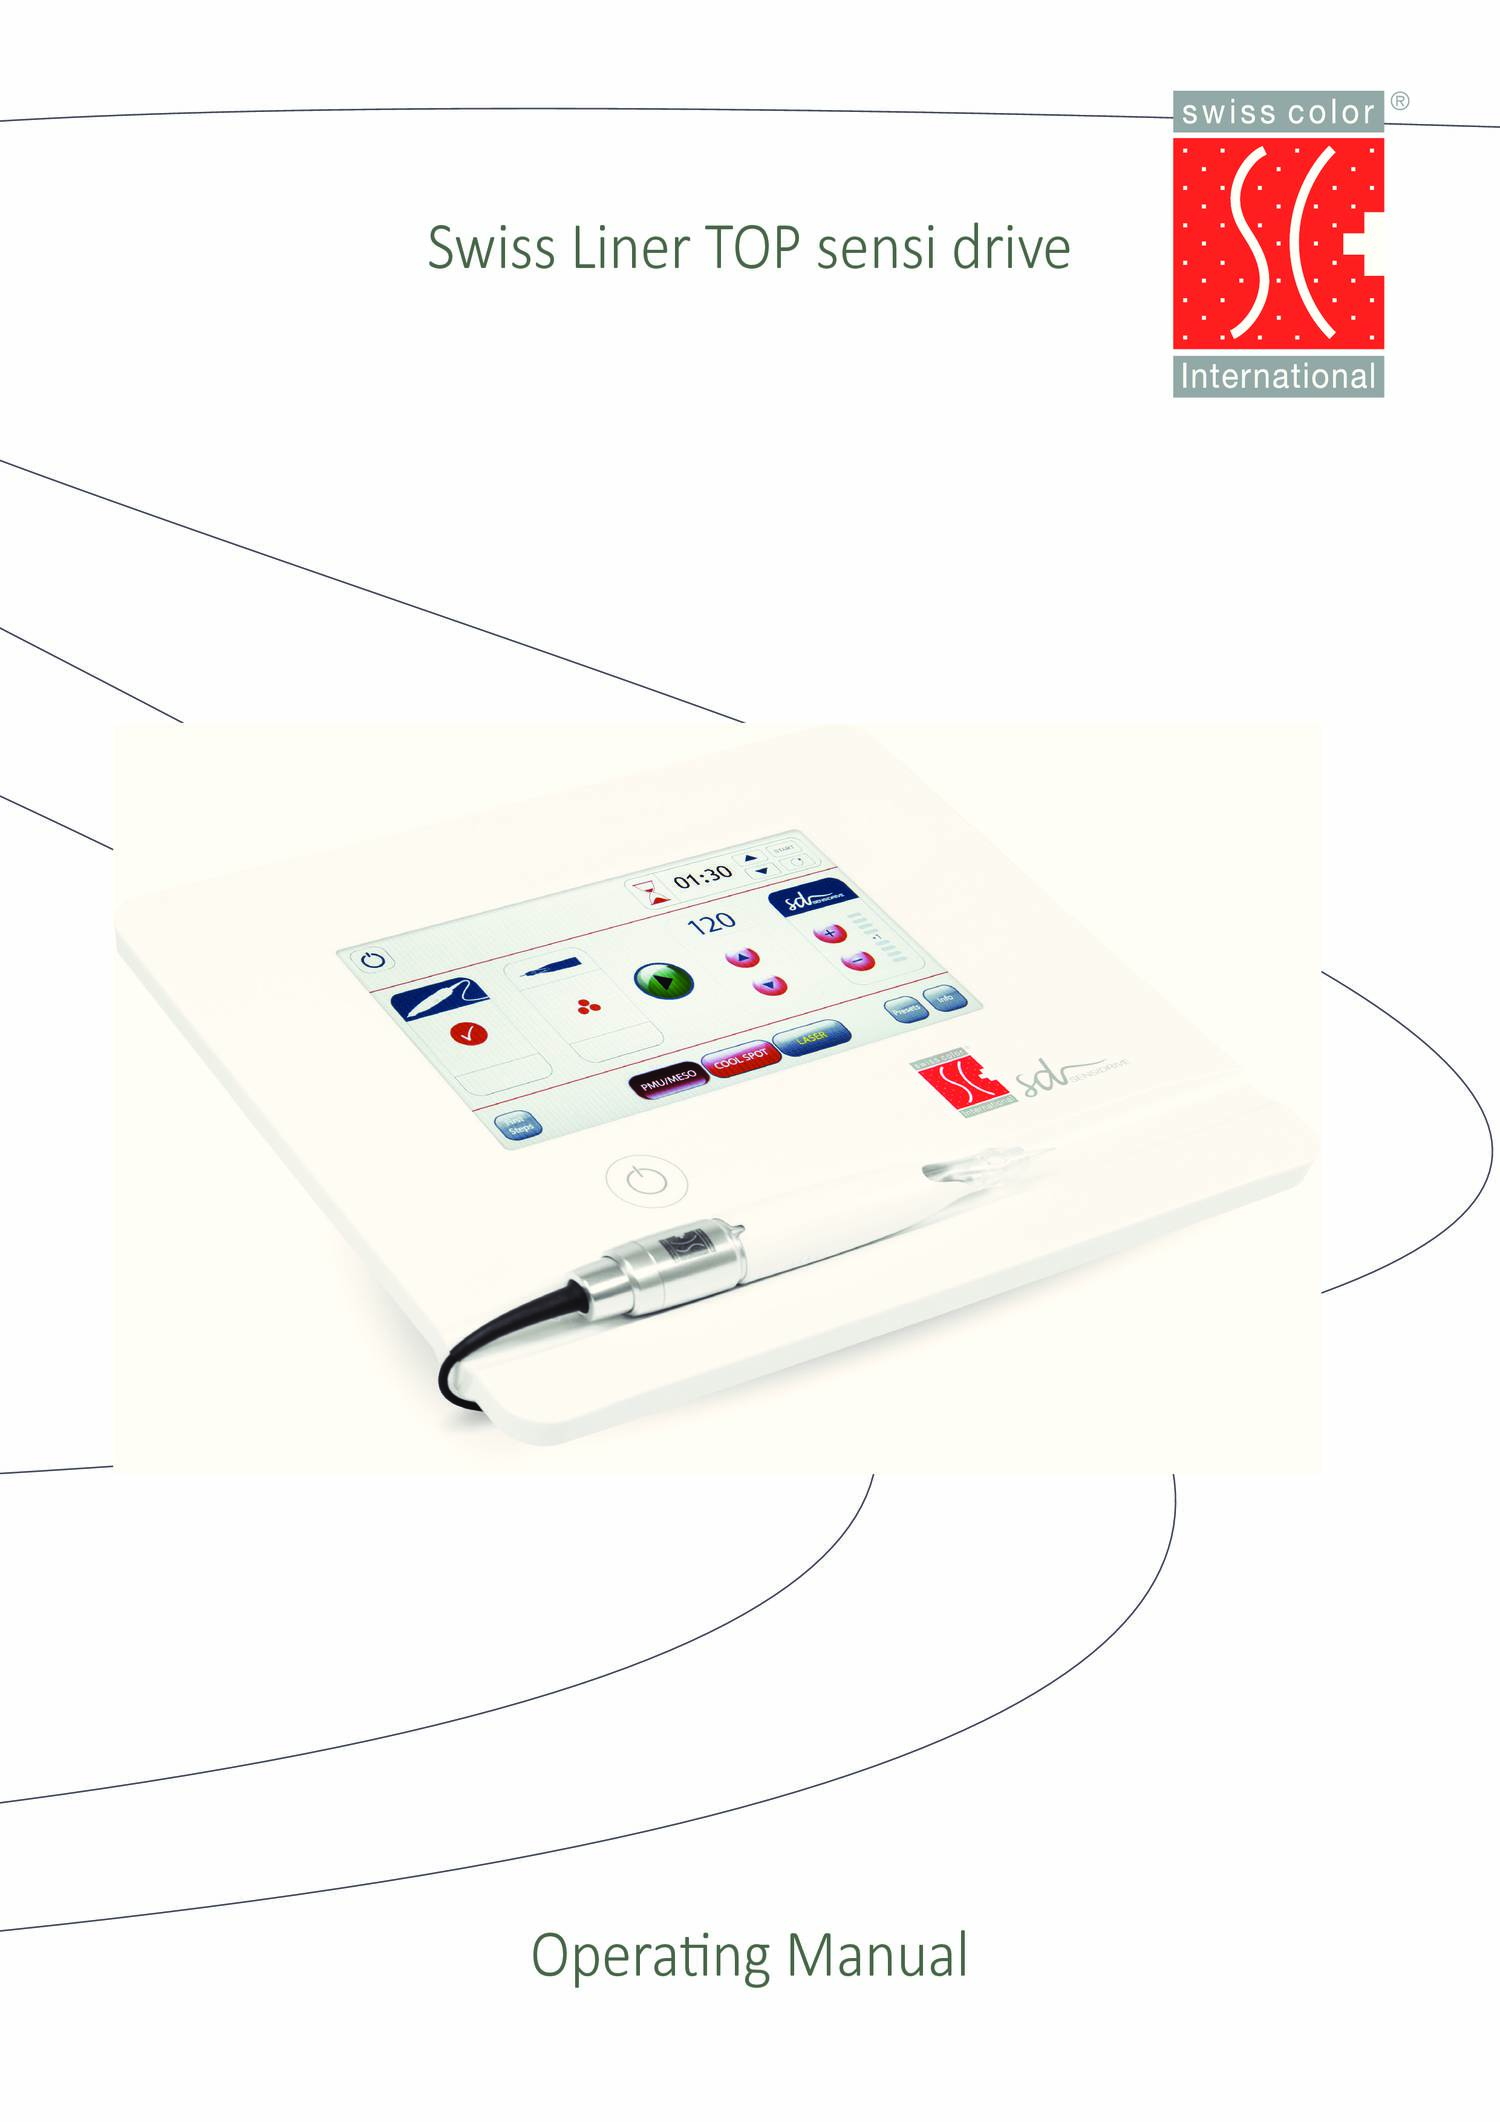 Operating Manual Swiss Liner TOP sensi drive 2015.pdf | DocDroid